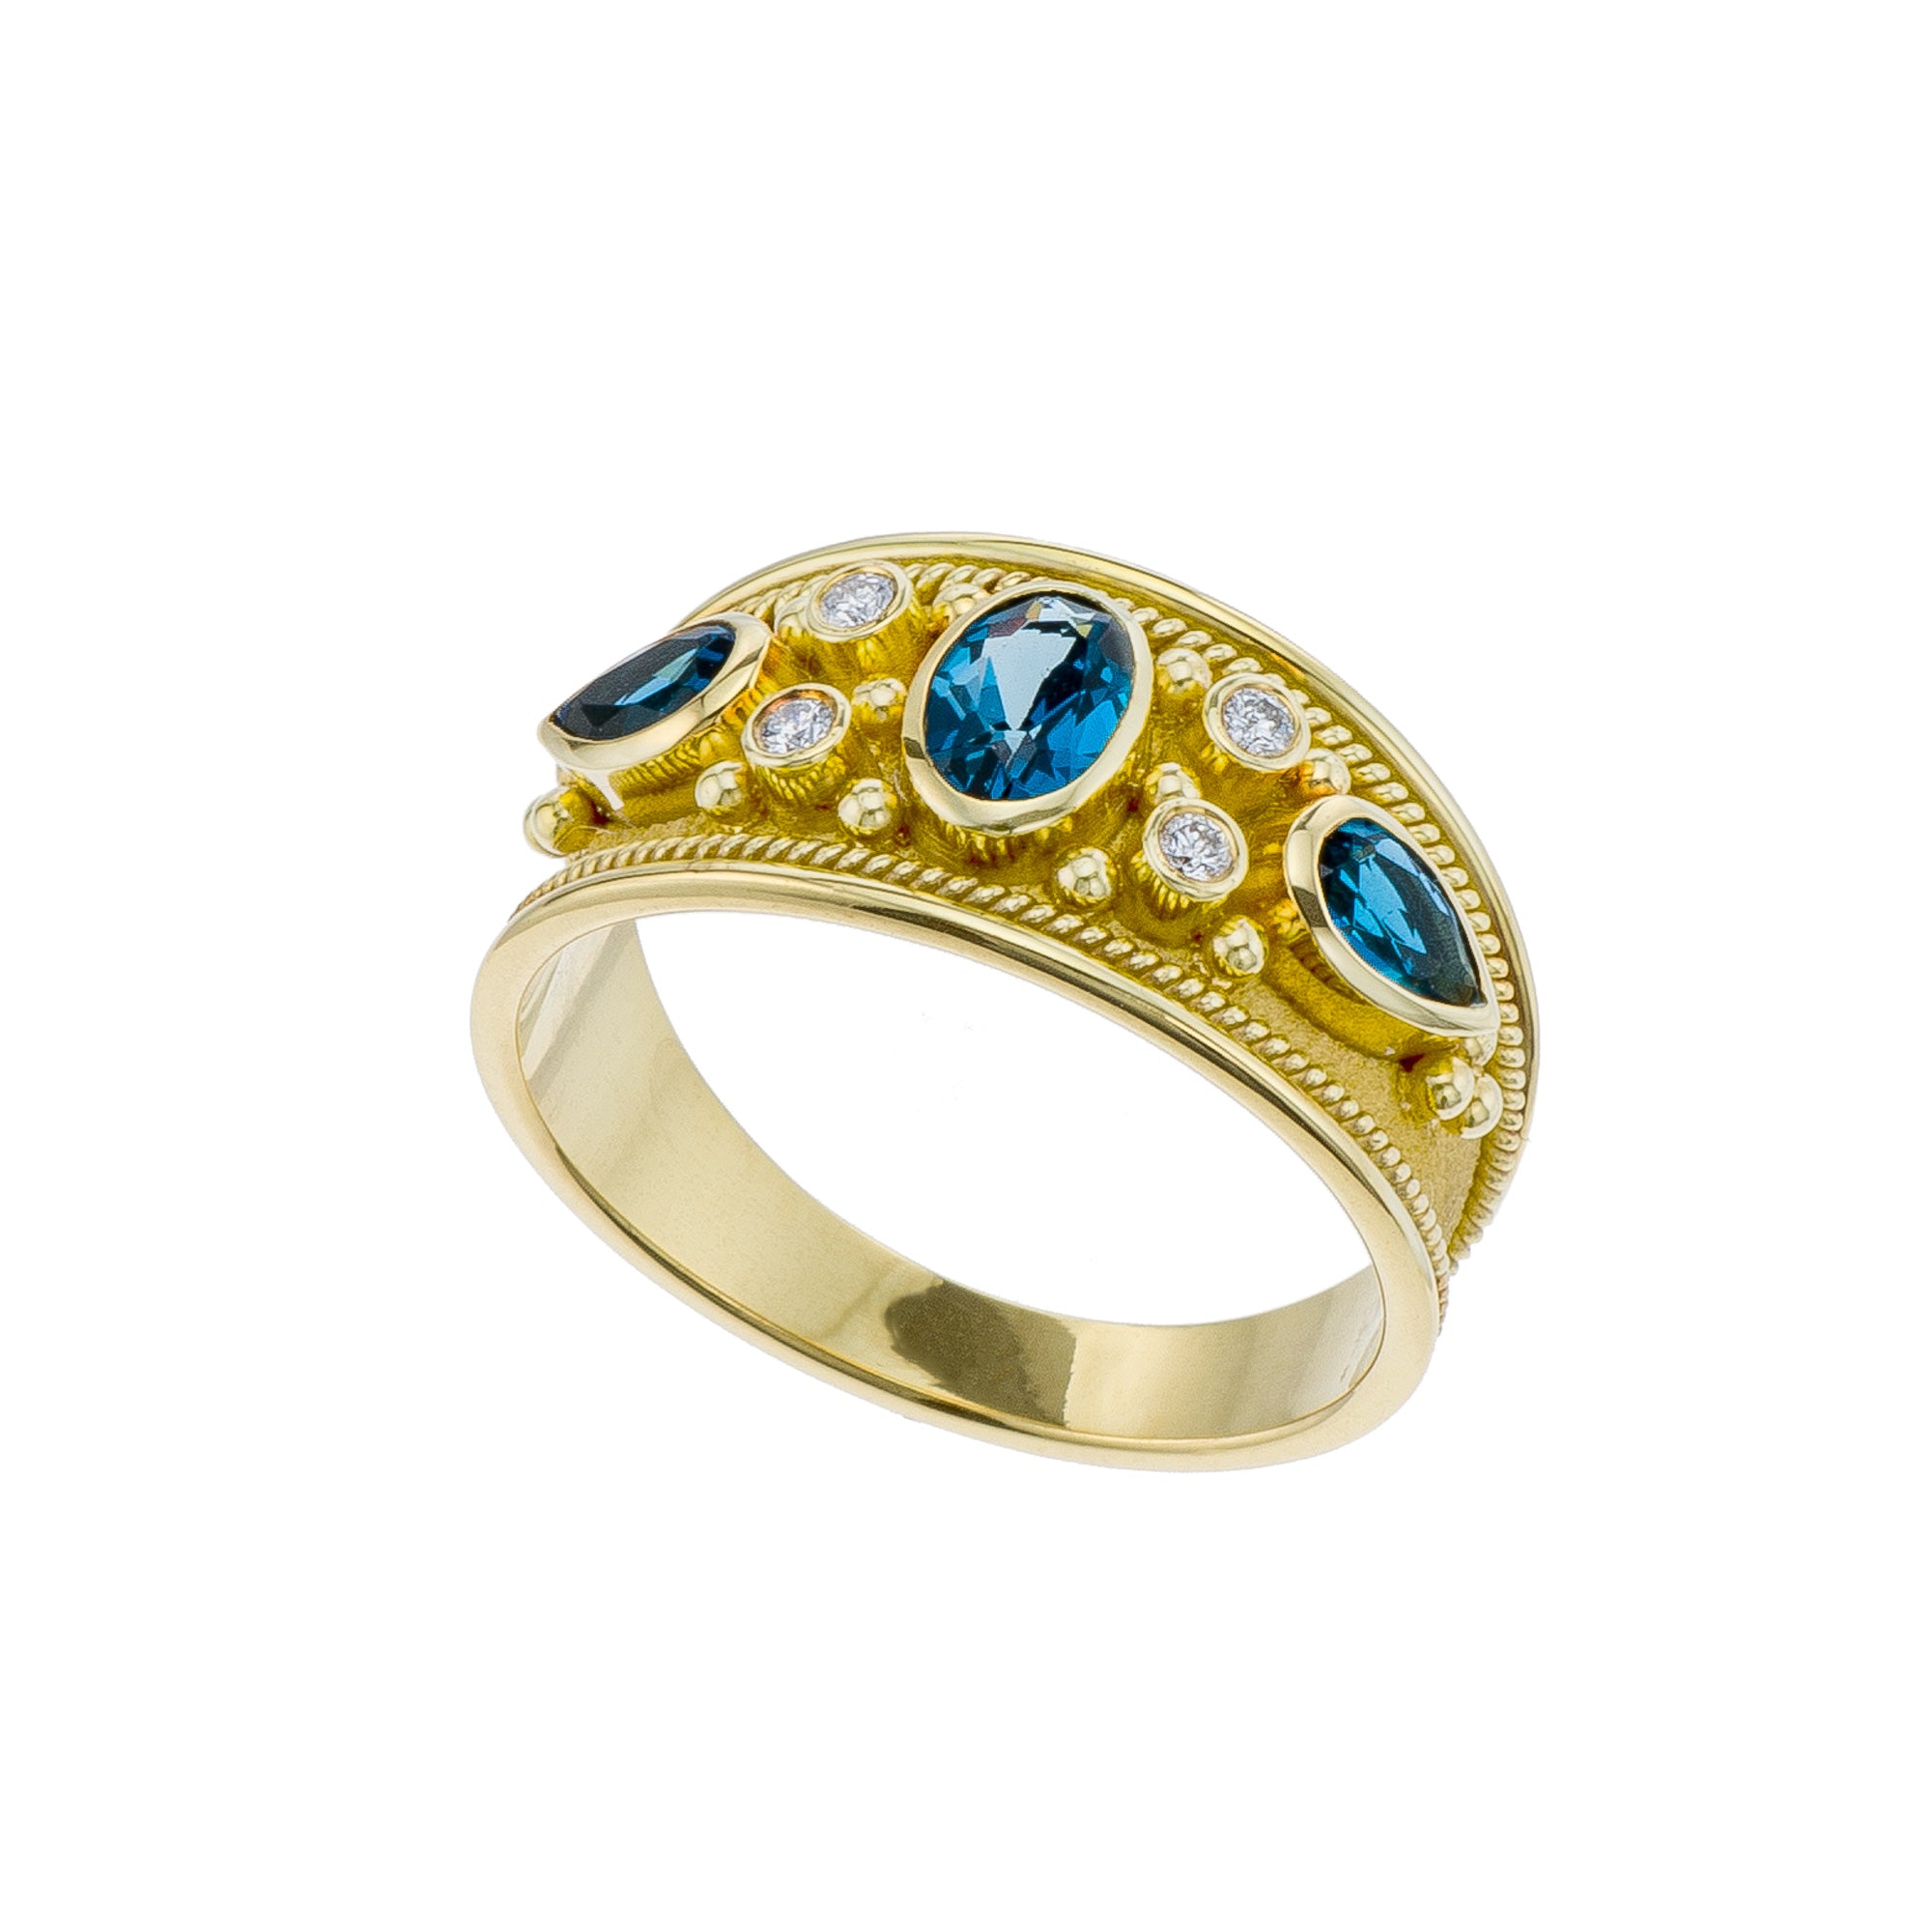 London Topaz Gold Byzantine Ring with Diamonds Odysseus Jewelry